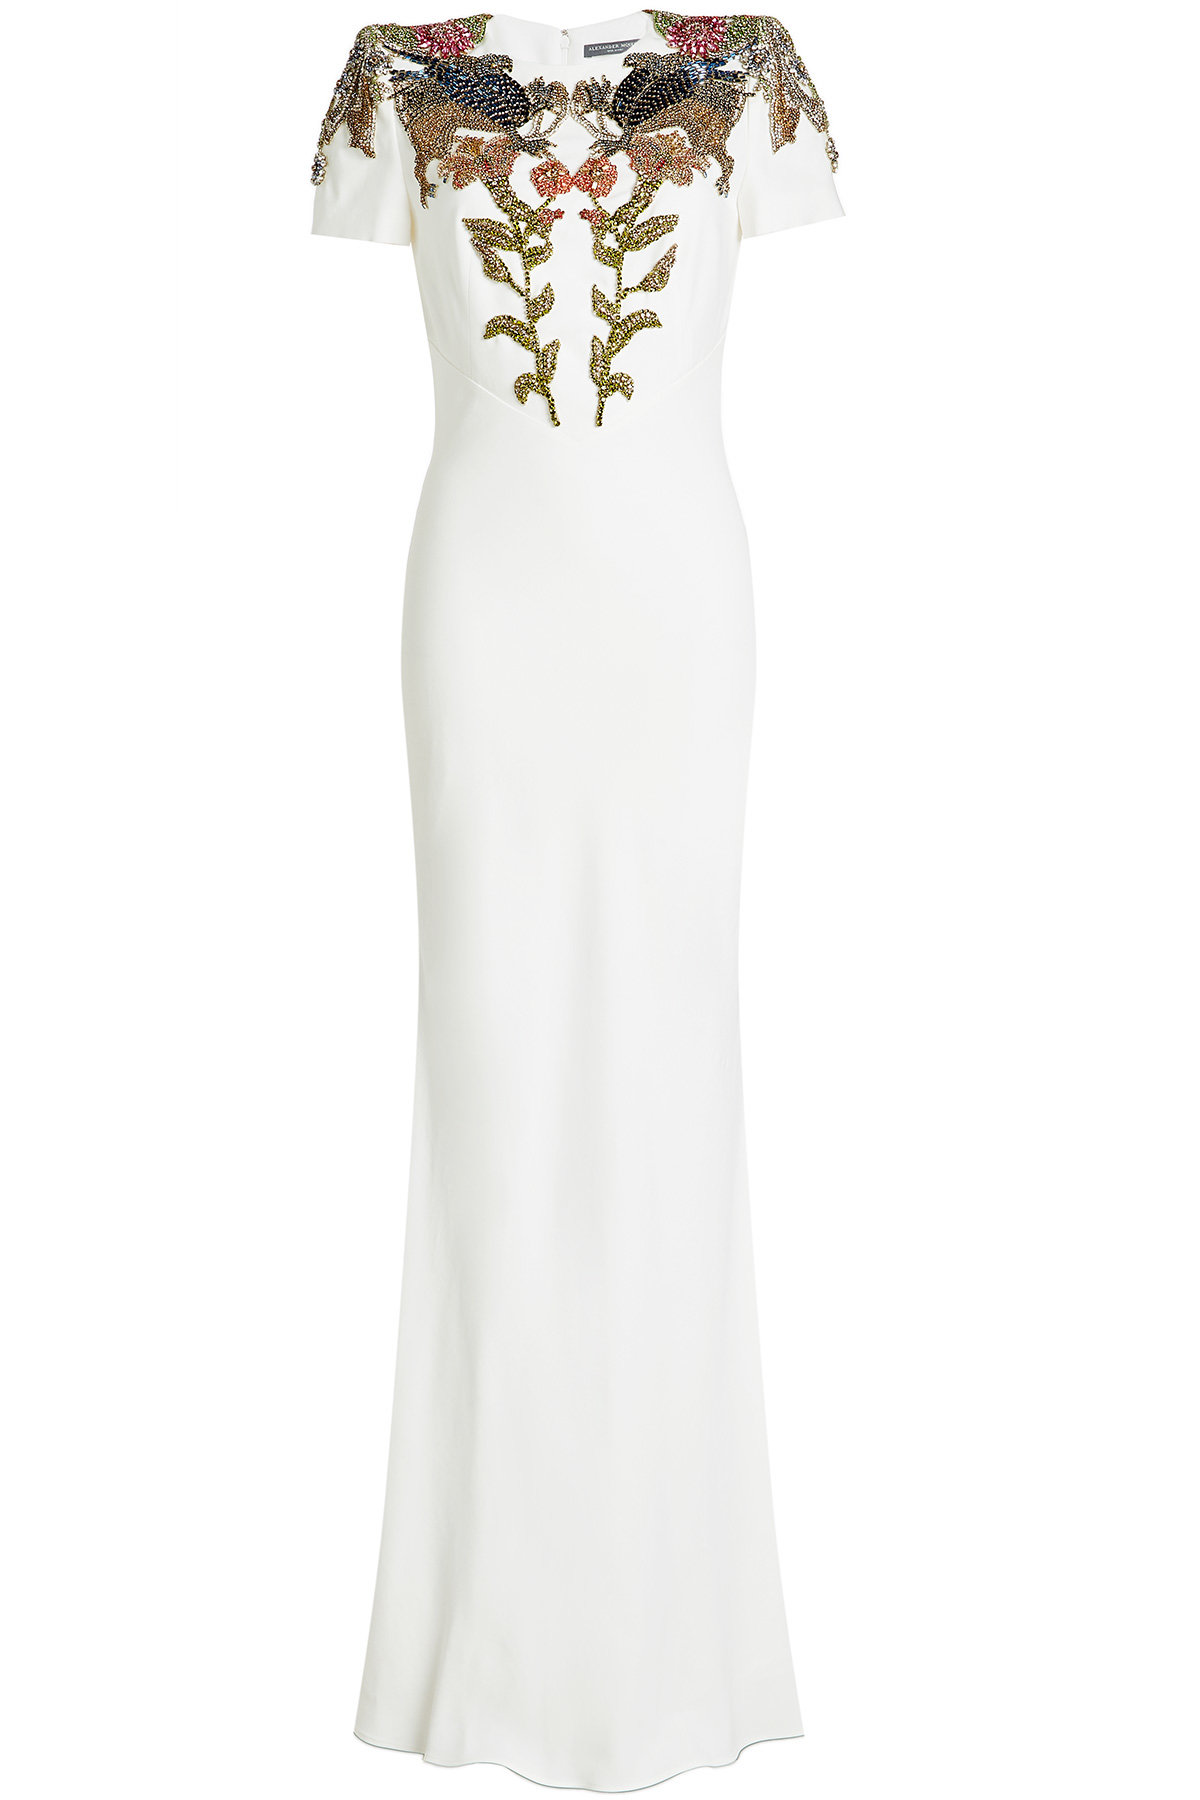 Alexander McQueen - Embellished Gown